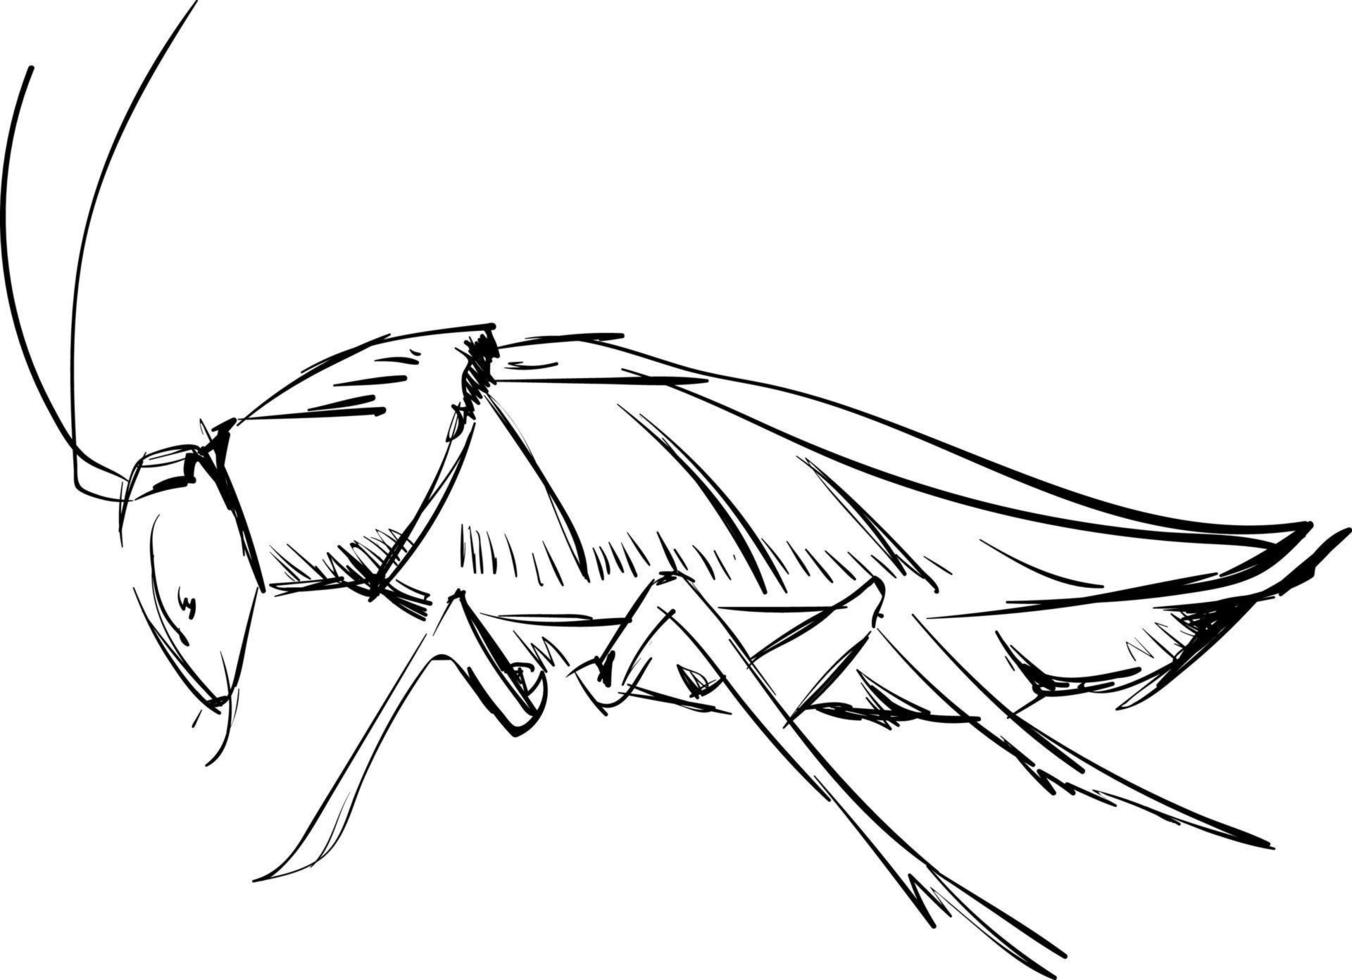 kackerlacka teckning, illustration, vektor på vit bakgrund.